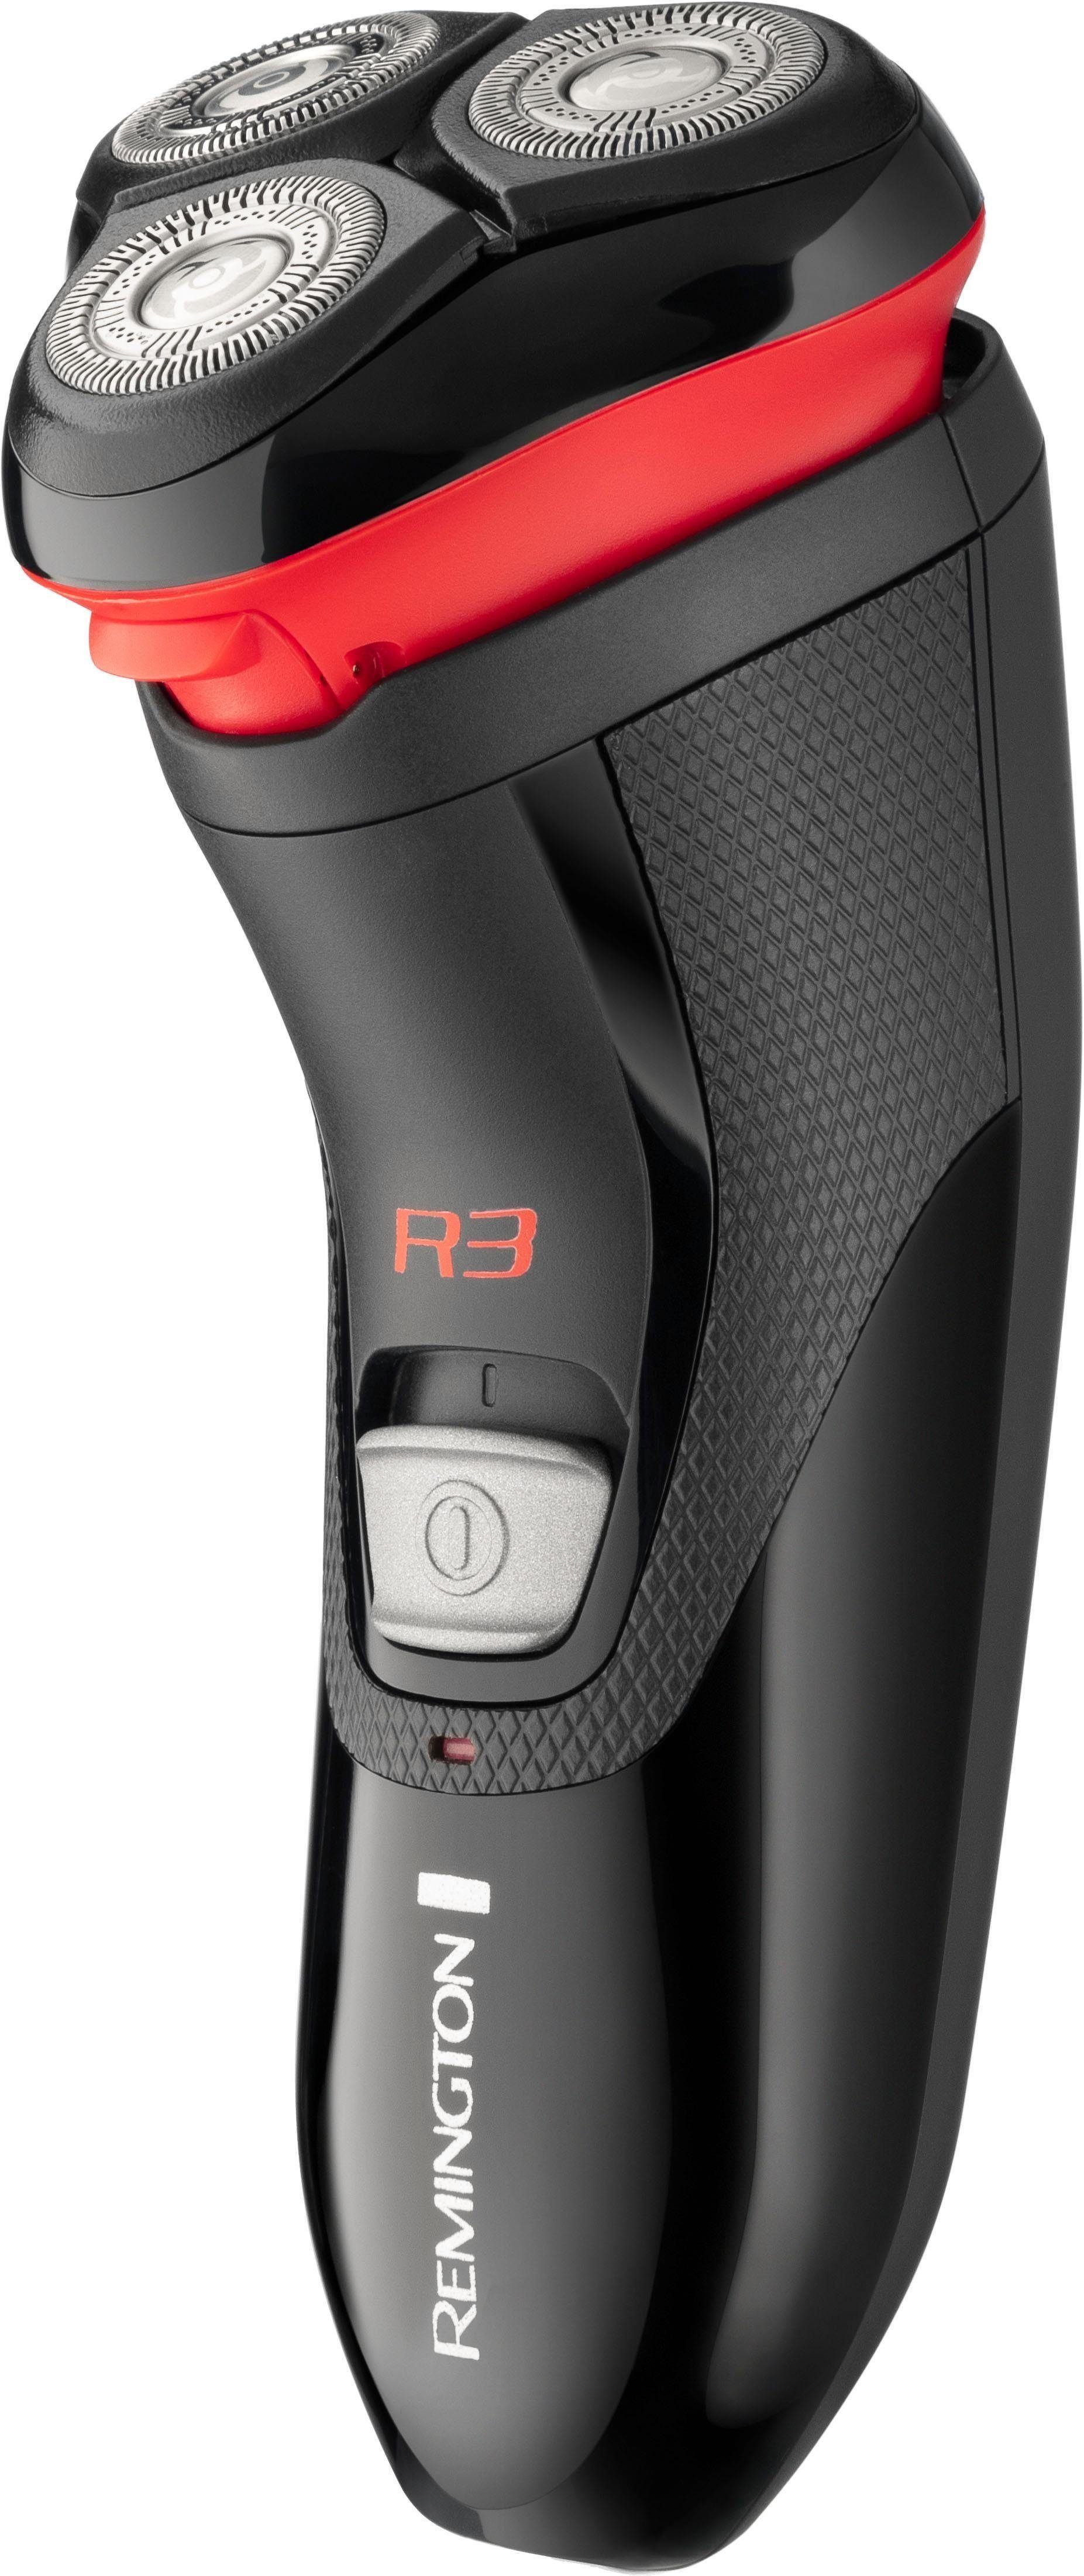 Remington Elektrorasierer R3000, Aufsätze: 1, Maximaler Hautkontakt durch  flexiblen TPE Scherkopf und flexible Scherköpfe